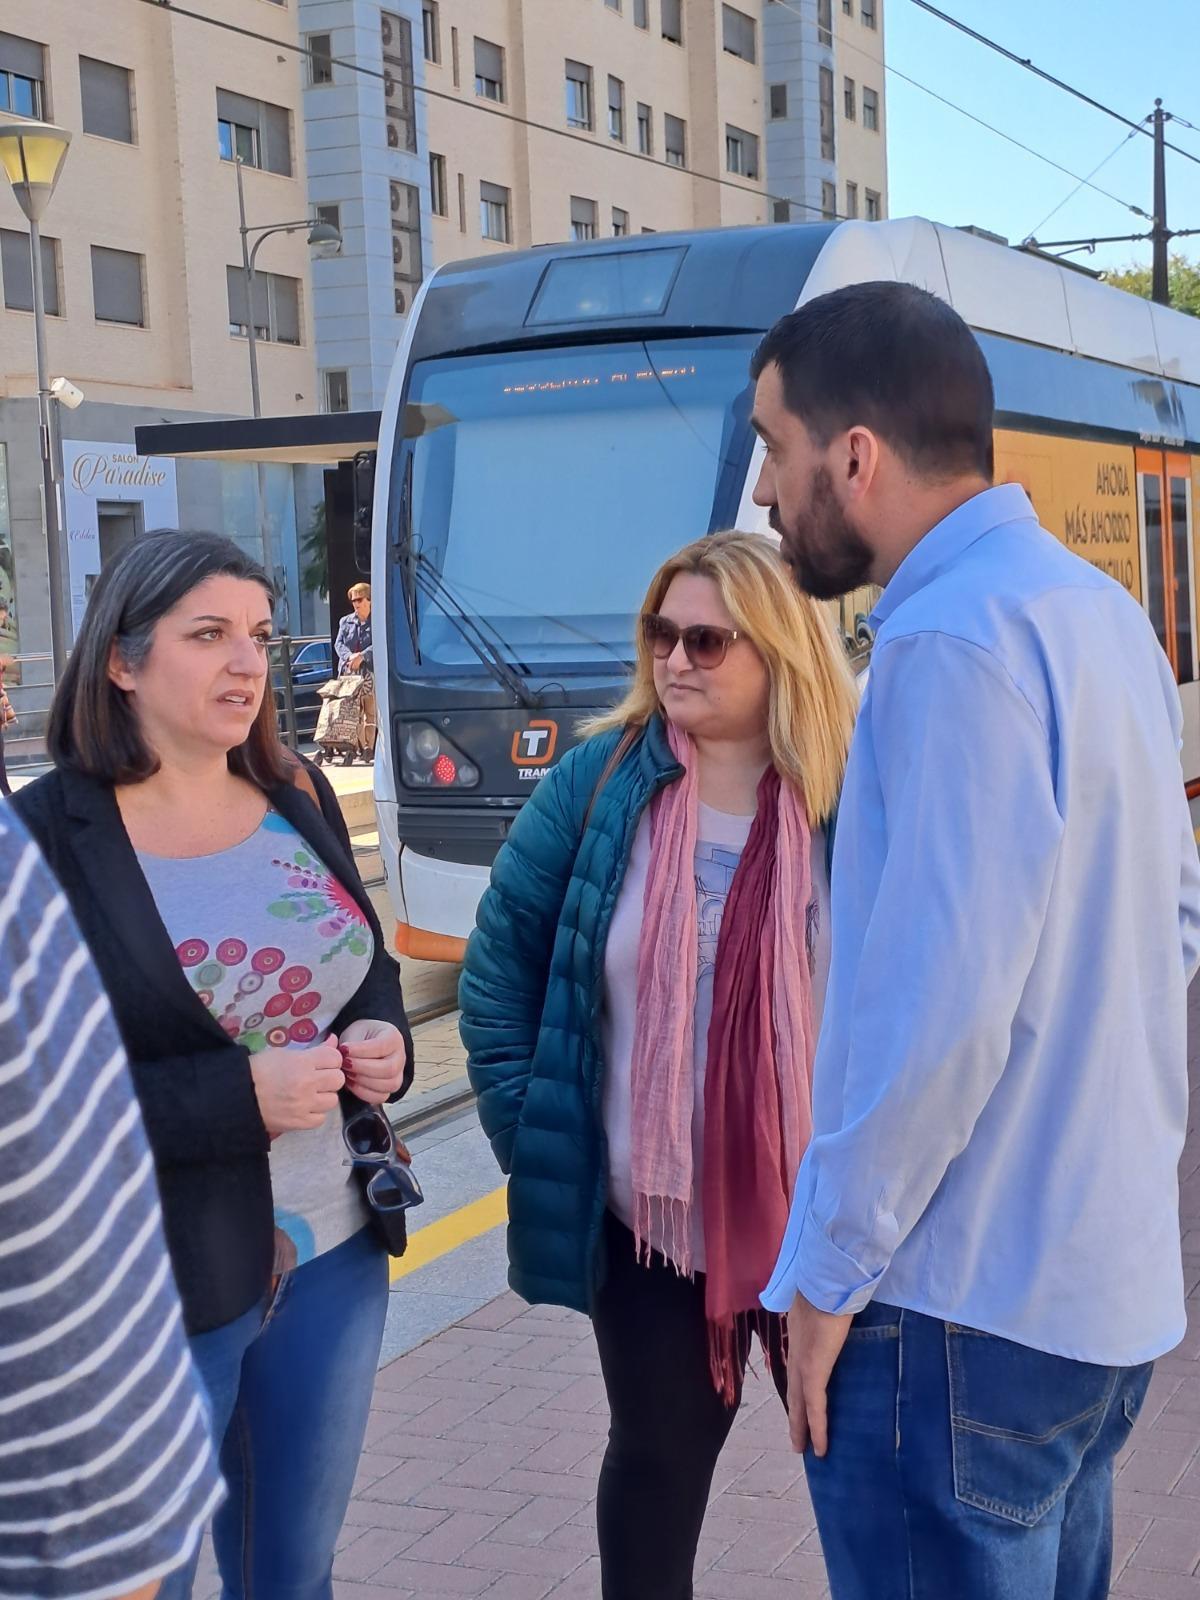 Estefanía Blanes charla con el concejal Pedro Mario Pardo mientras circula un tranvía.